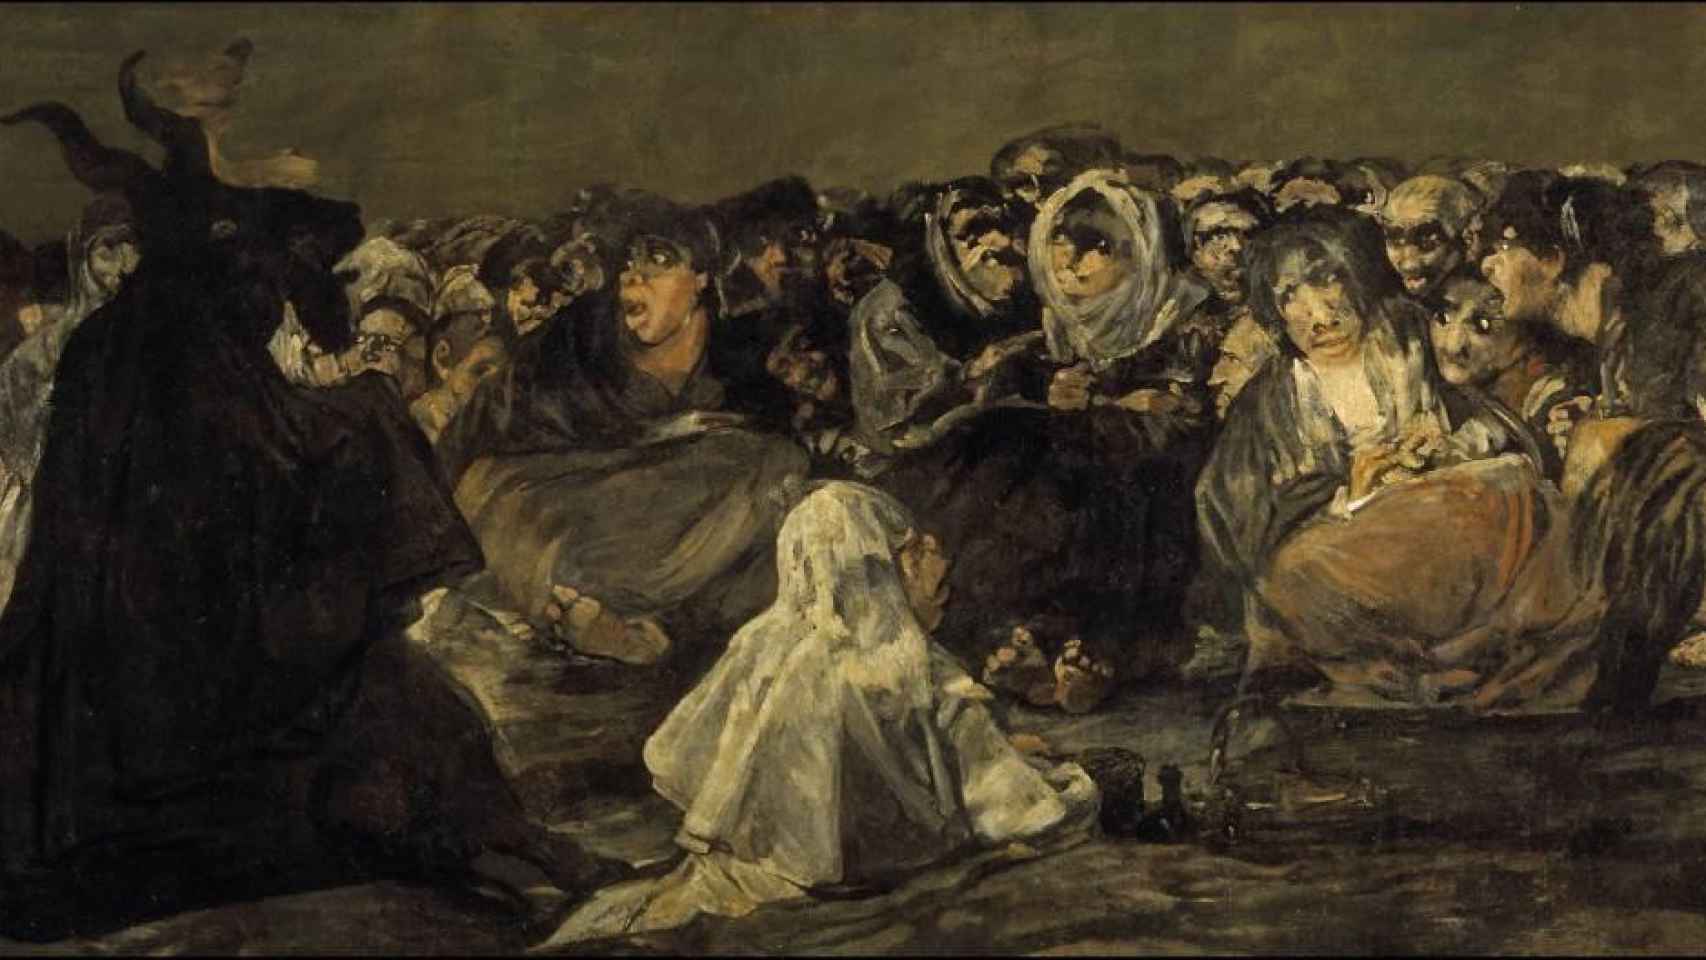 Brujas en 'El aquelarre', de Goya / ARCHIVO